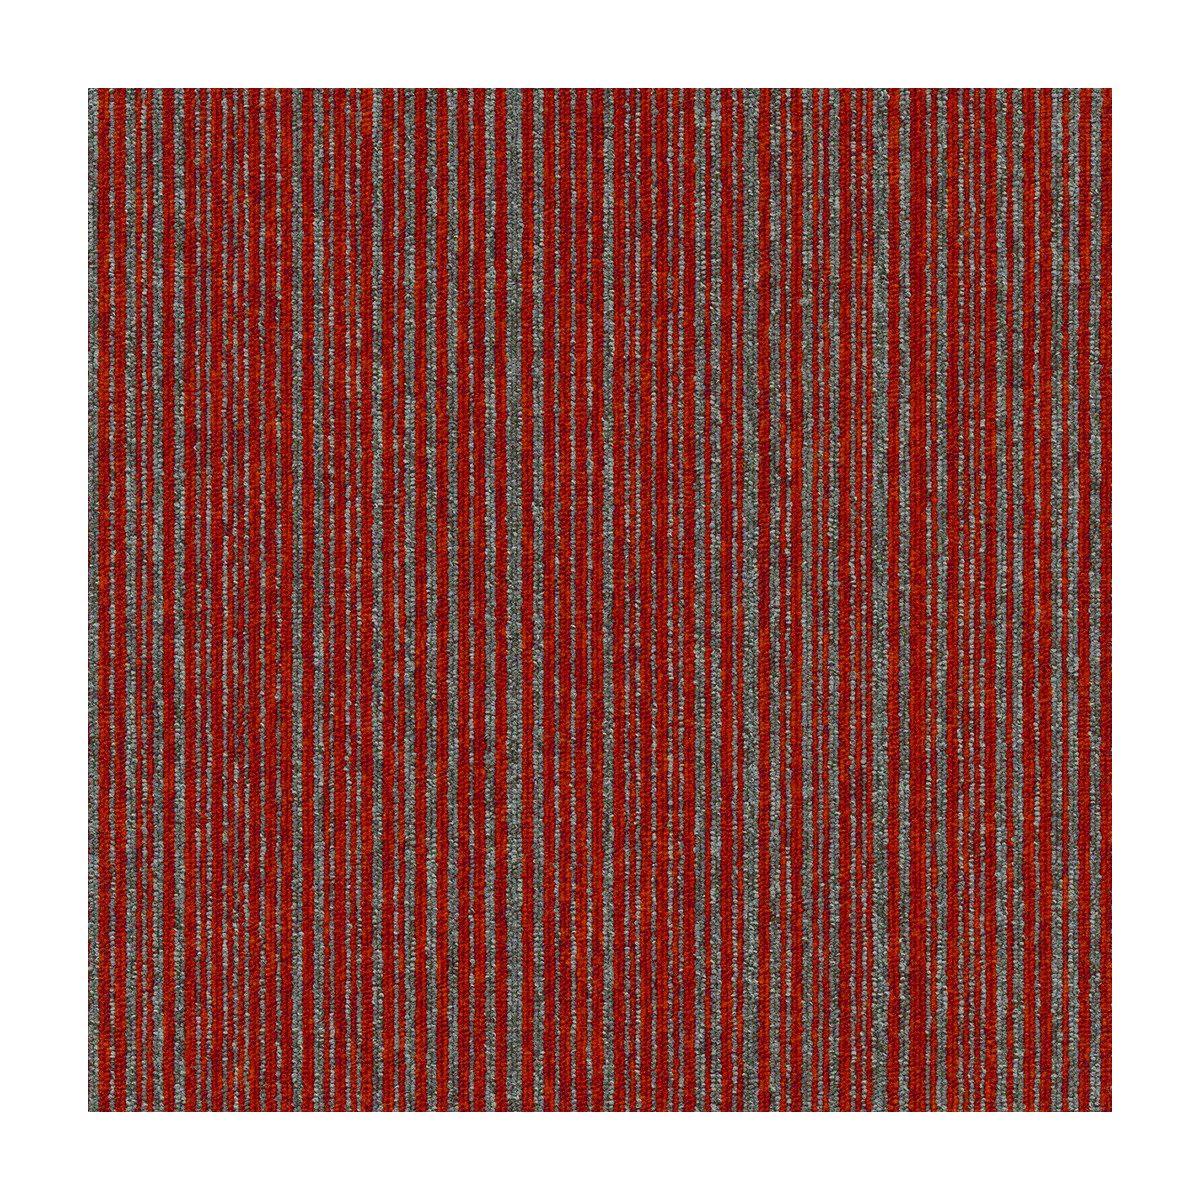 Kobercový štvorec Coral Lines 60380-50 červeno-šedý - 50x50 cm